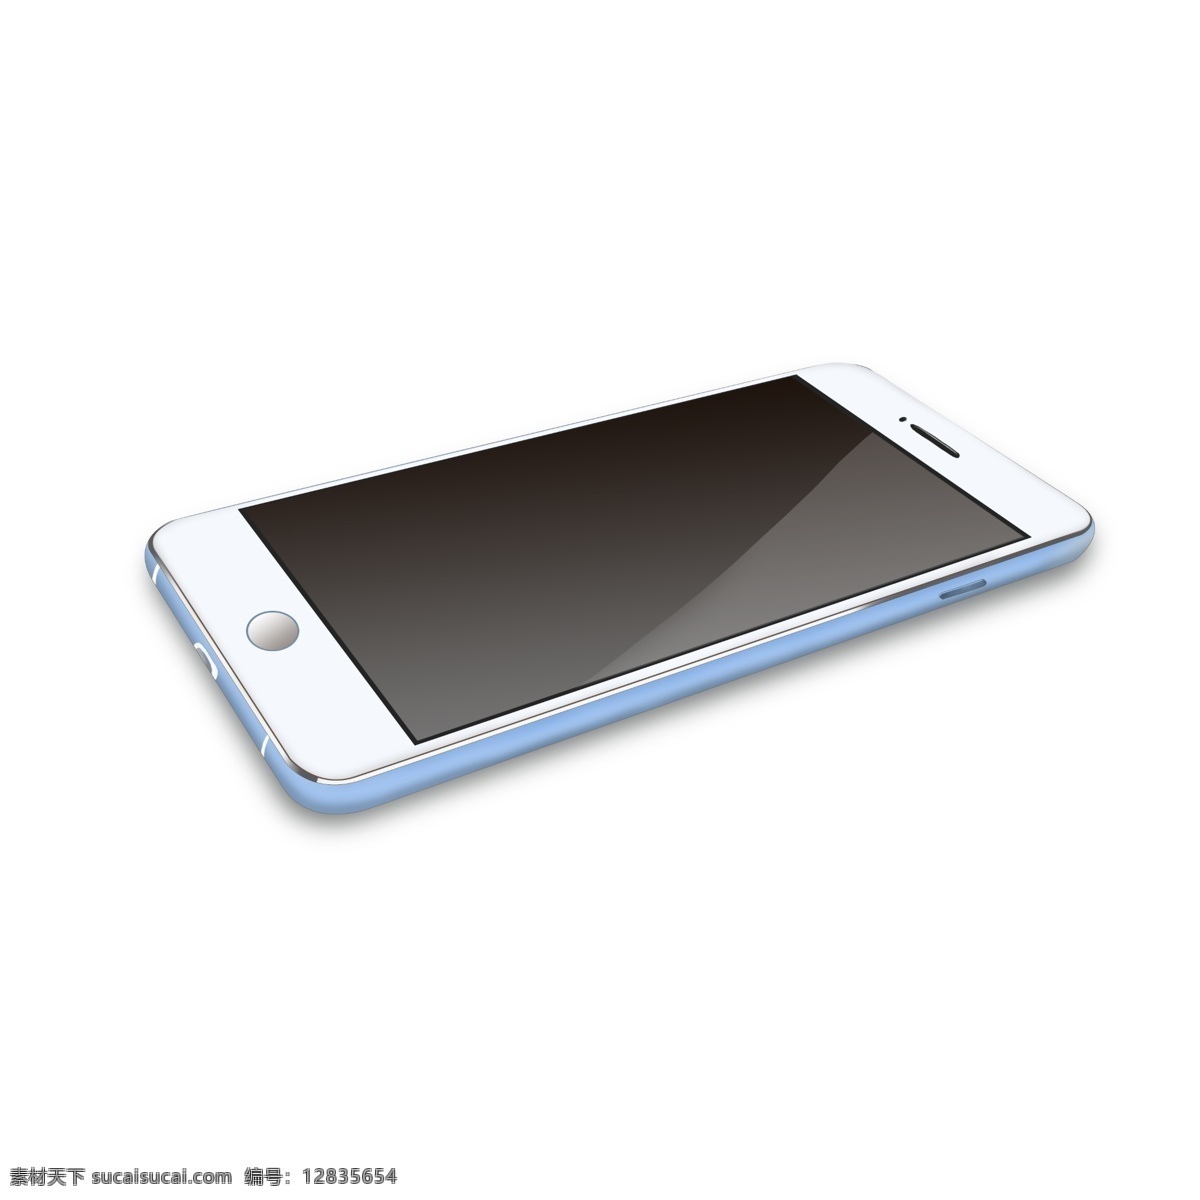 蓝白色 3d 仿真 手机 小清新手机 触屏手机 模拟手机 虚拟手机 超薄手机 仿真手机 3d手机 写实手机